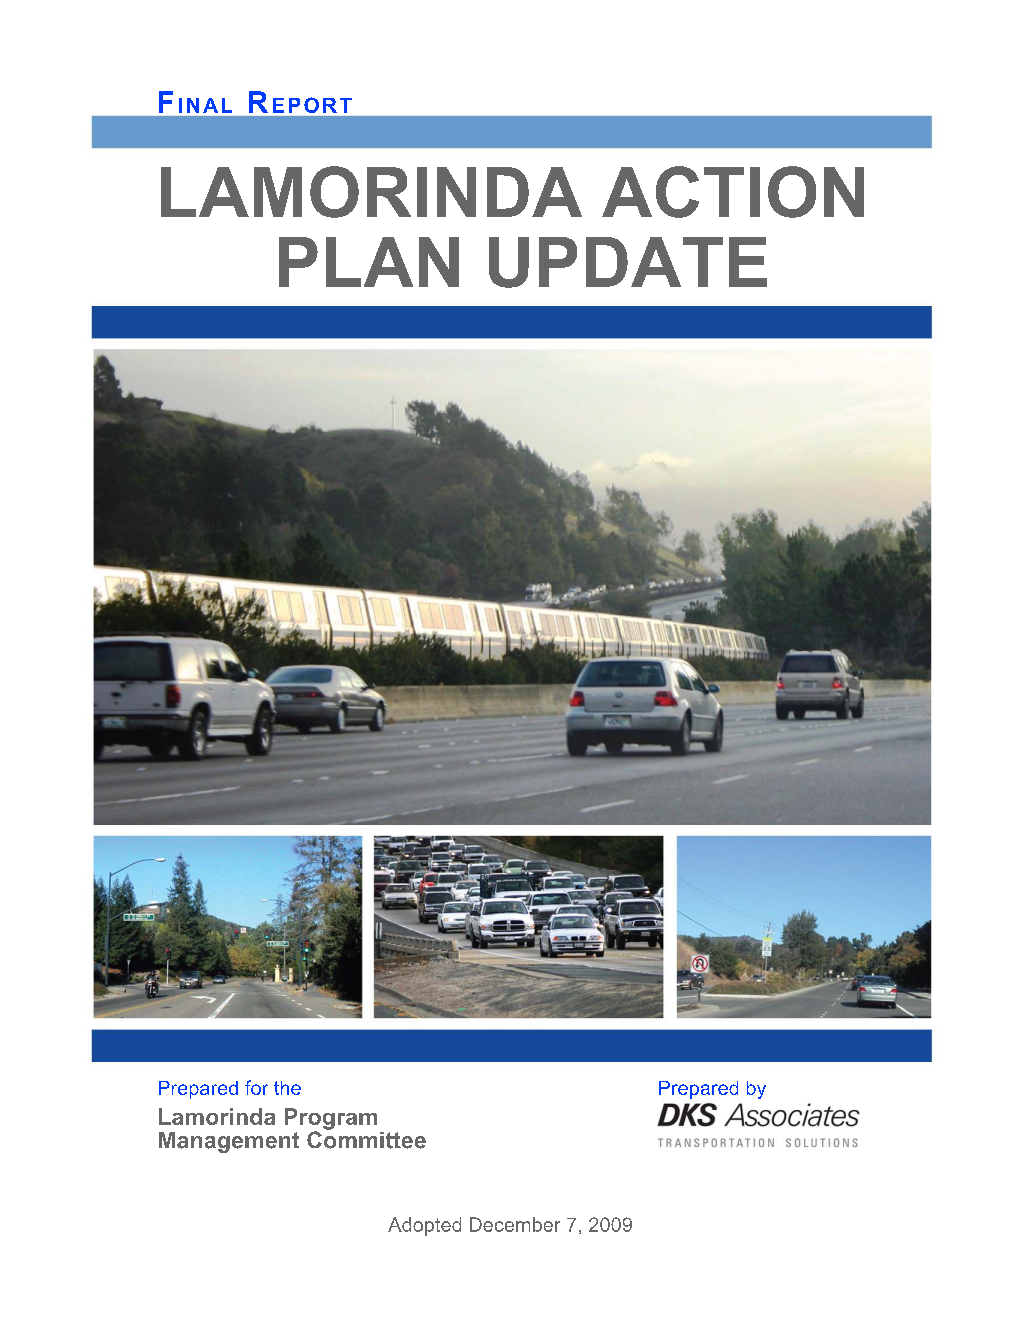 2009 Lamorinda Action Plan